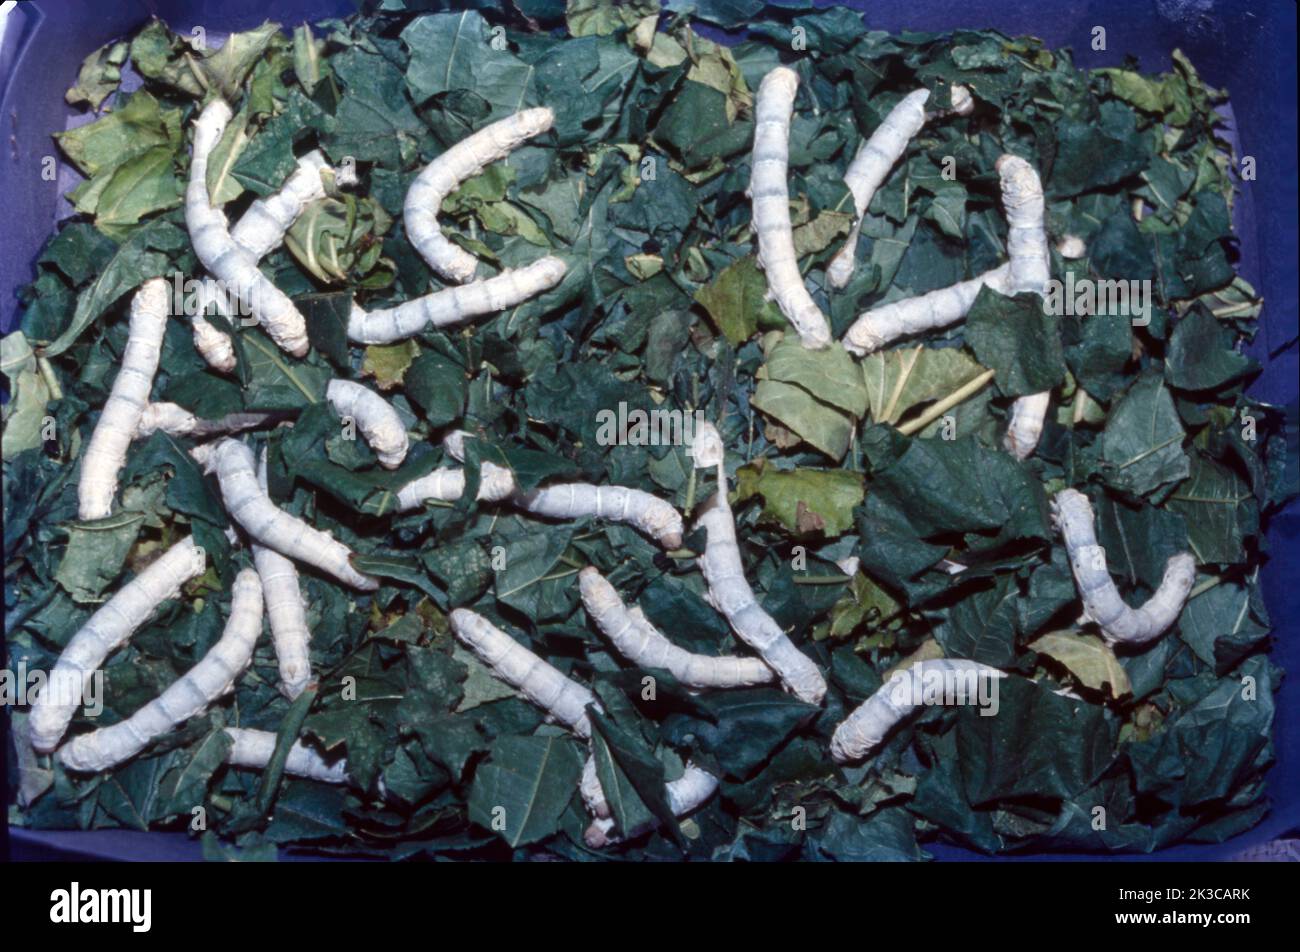 Die Serikultur ist der Prozess des Anbaus von Seidenraupen und der Gewinnung von Seide. Die Raupen der heimischen Seidenmotte (auch „Bombyx Mori“ genannt) sind die am häufigsten verwendeten Seidenraupenarten in der Serikultur. Serikultur, Erzeugung von Rohseide durch Aufzucht von Raupen (Larven), insbesondere der domestizierten Seidenraupe (Bombyx Mori). Stockfoto